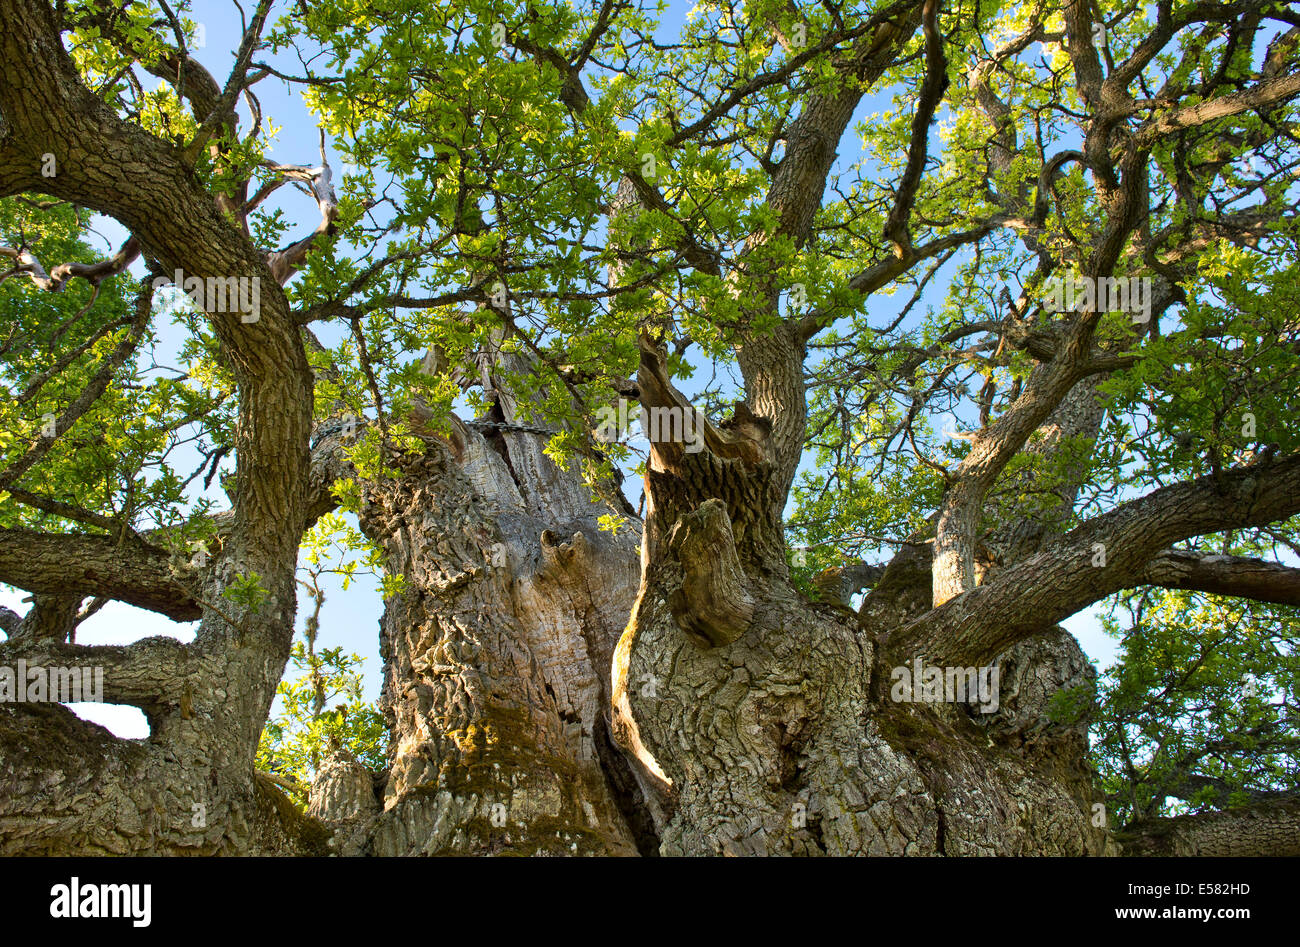 Ou Kvill Rumskulla, le plus vieux chêne Arbre de chêne en Suède, plus de 1000 ans, Rumskulla, Smaland, Suède Banque D'Images